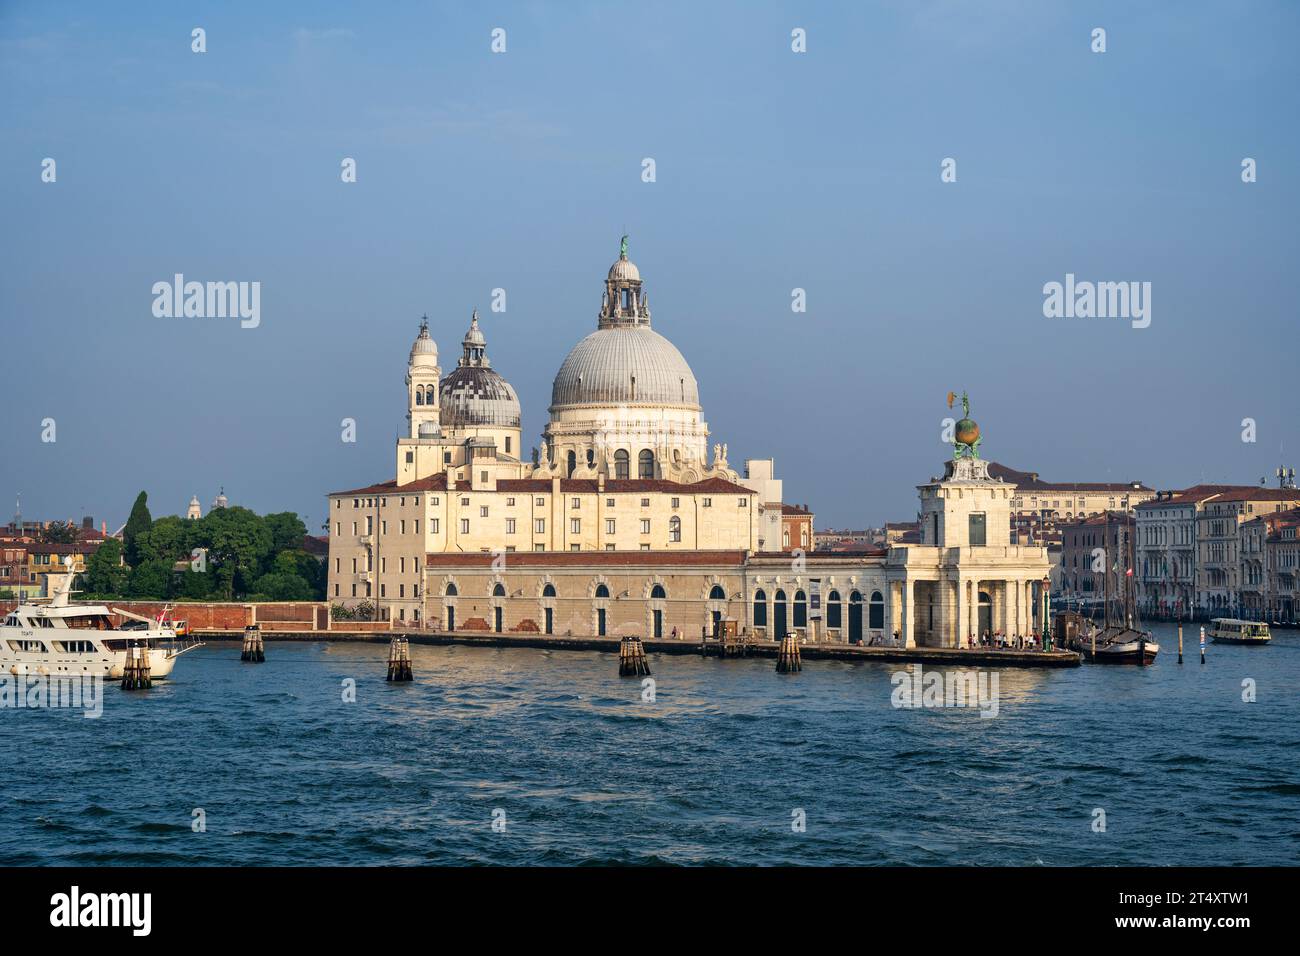 Basilica di Santa Maria della Salute und Dogana di Mare (Zollhaus) am südlichen Eingang des Canal Grande in Venedig, Region Veneto, Italien Stockfoto